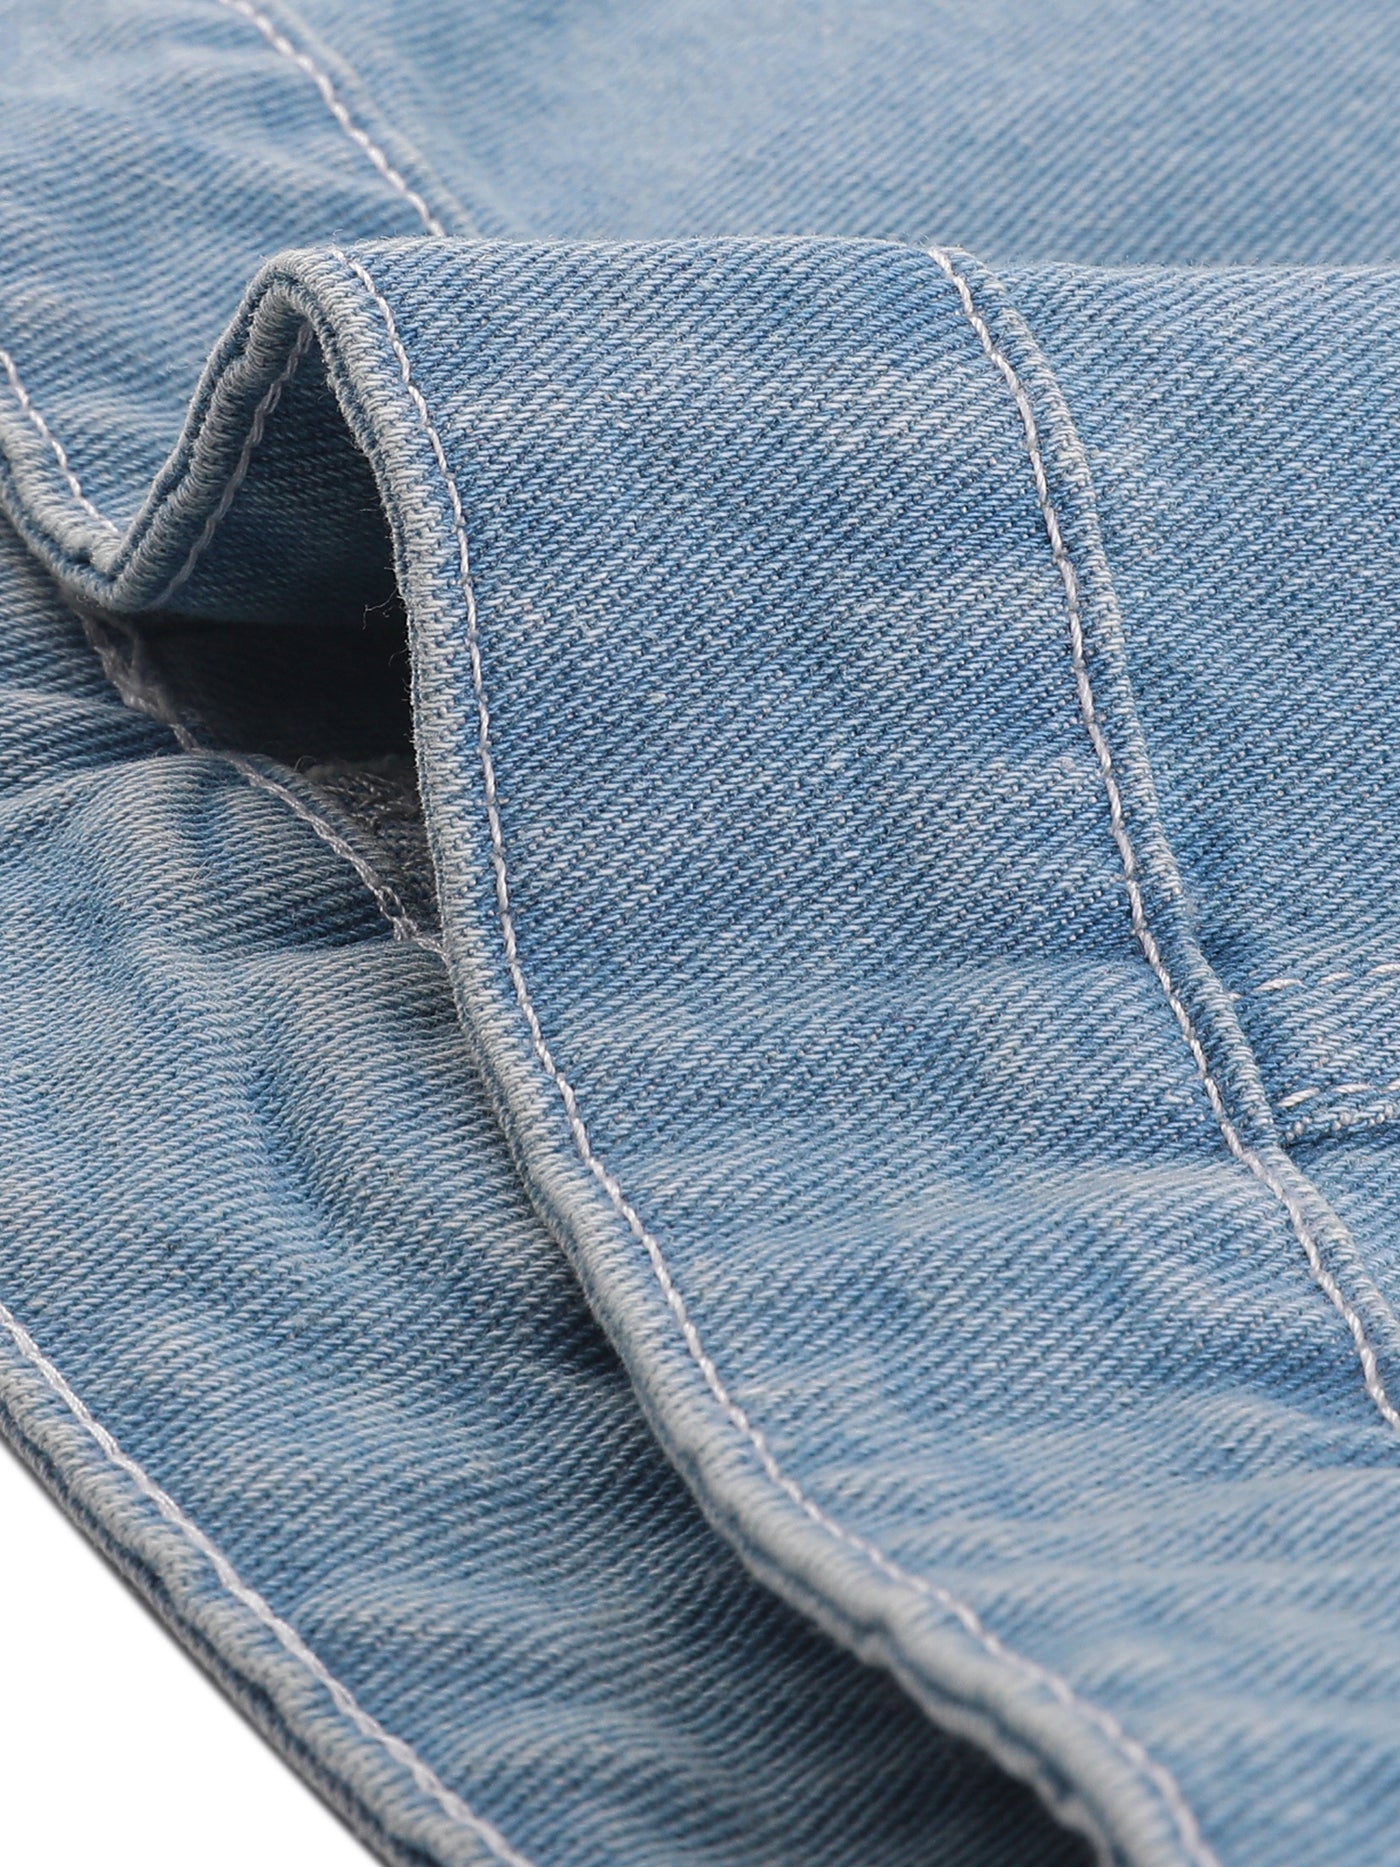 Allegra K Buttoned Chest Flap Pocket Washed Denim Jacket Vest